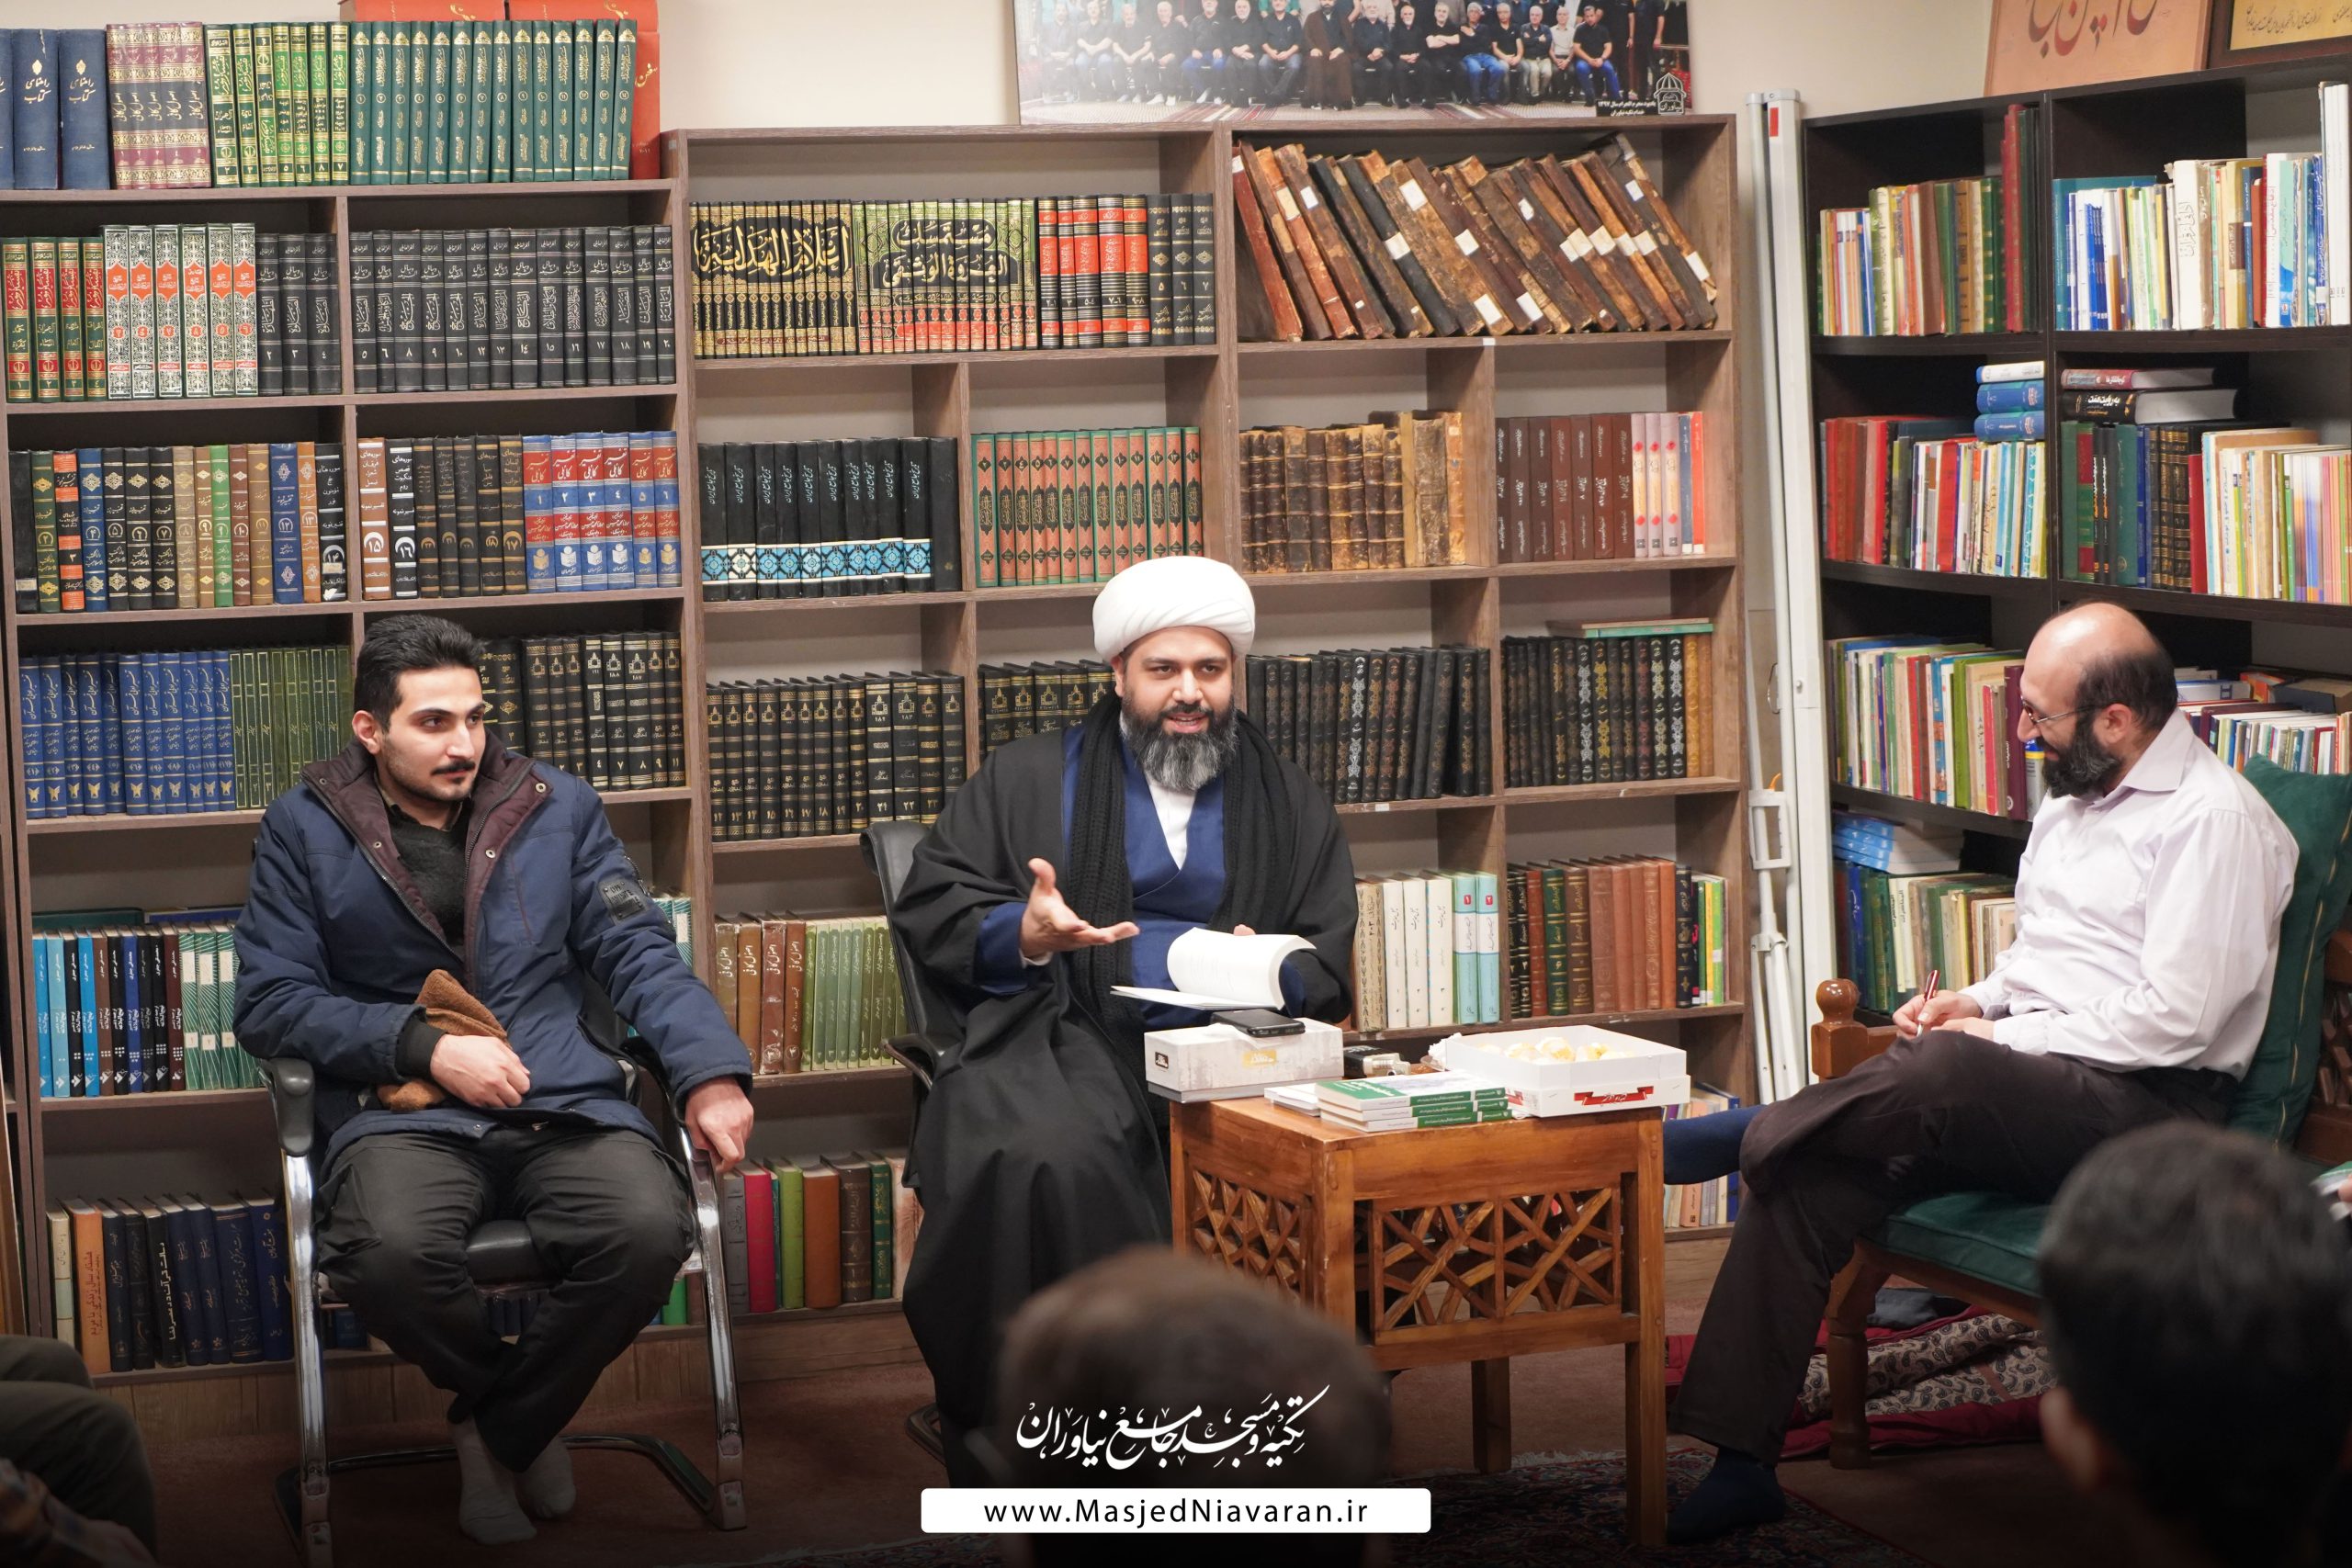 جلسه مطالعاتی هفتگی مسجد جامع نیاوران